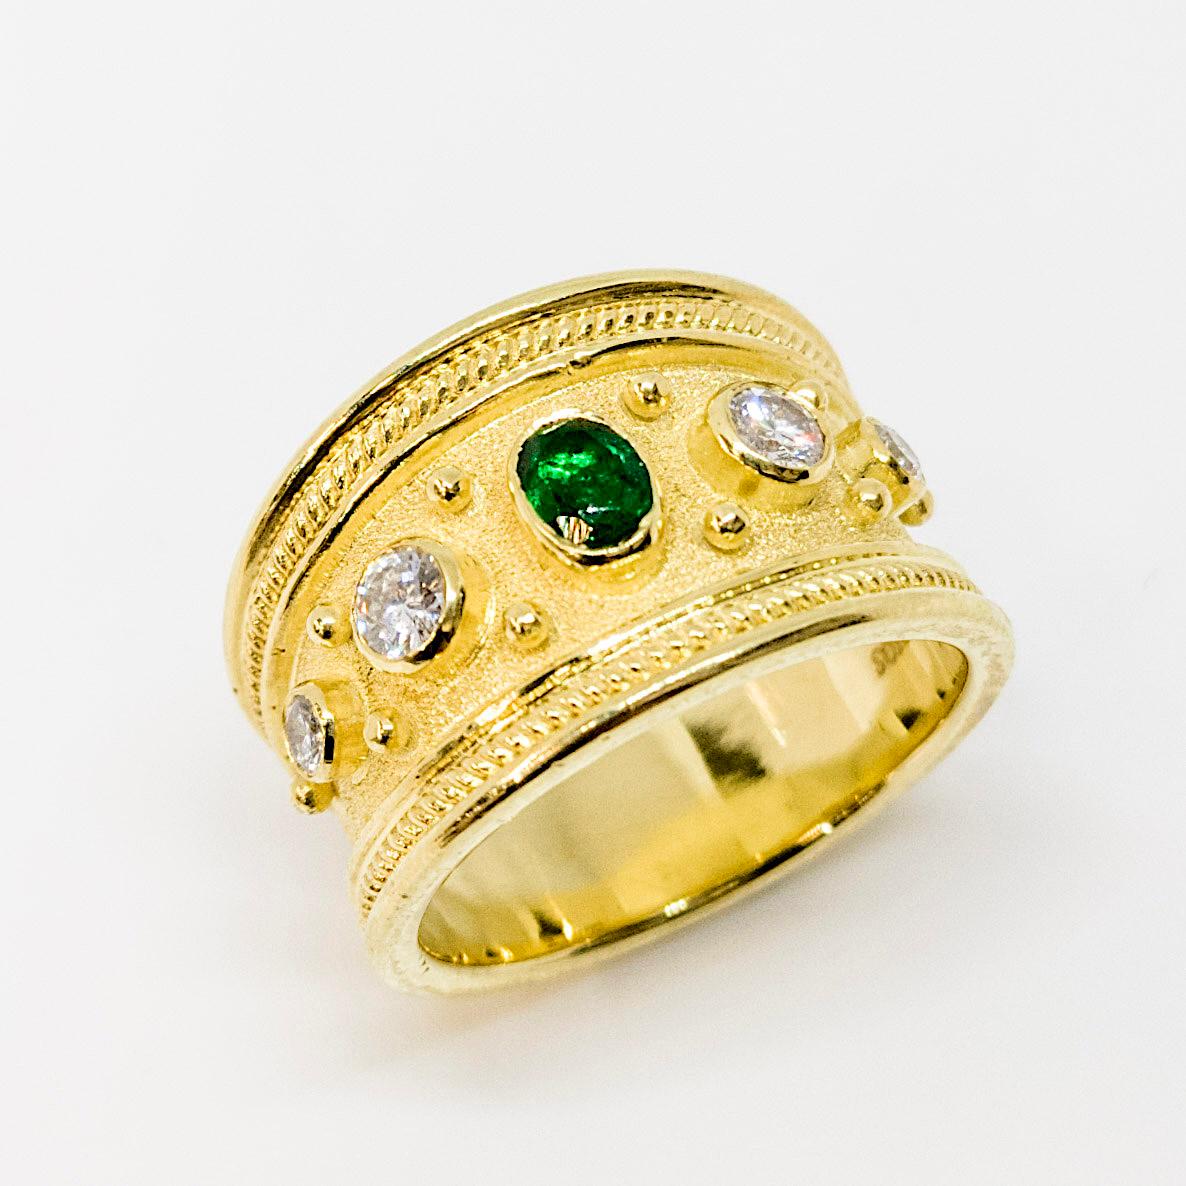 Dies ist eine atemberaubende S.Georgios Designer Ring in Gelbgold 18 Karat alle mit einem byzantinischen Samt Hintergrund und Granulation Details verziert - gedrehte Drähte und Perlen. In der Mitte des Rings befindet sich ein wunderschöner Smaragd